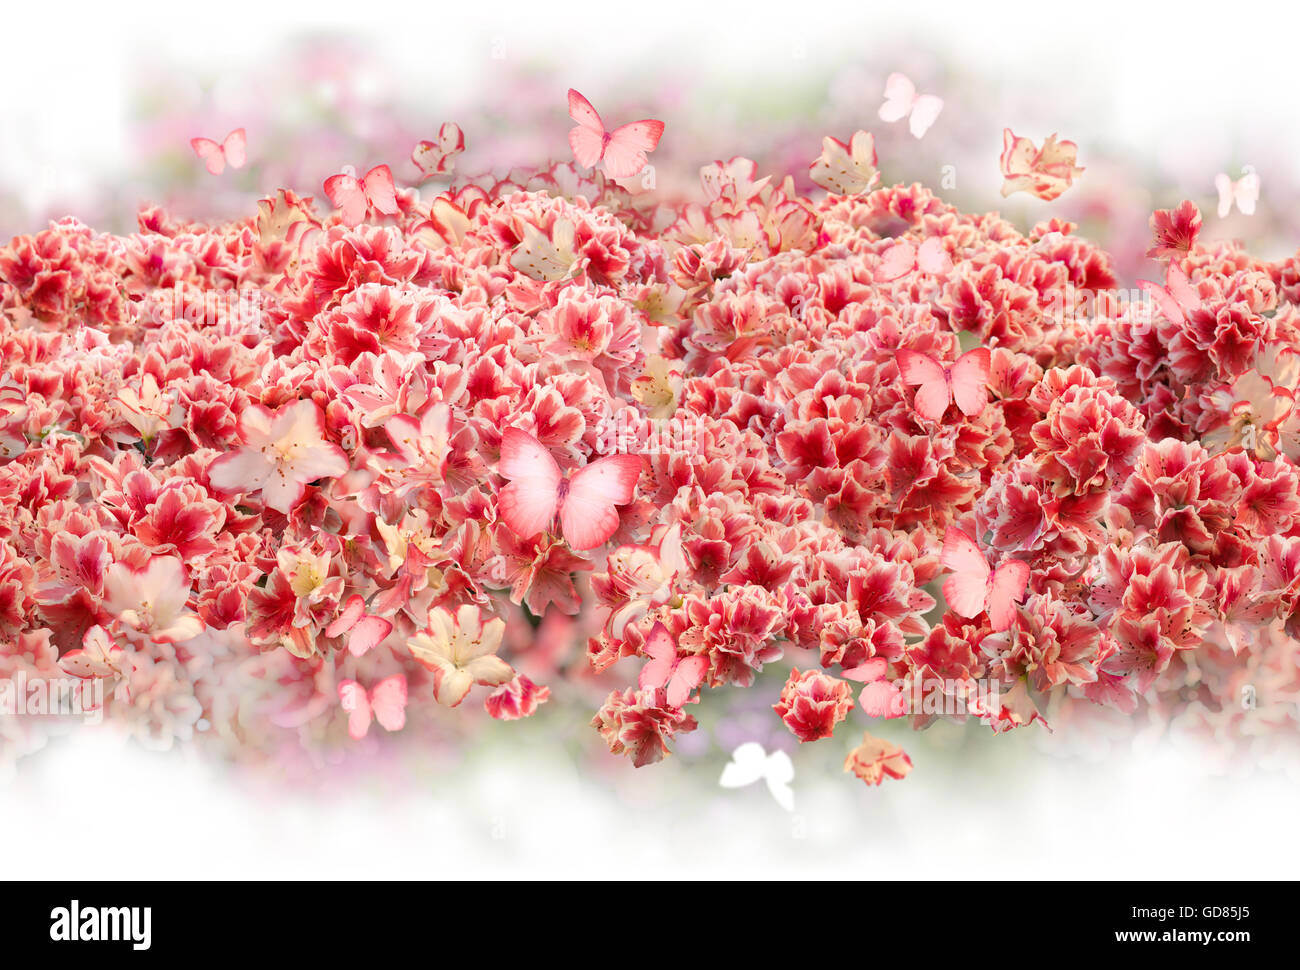 Wiederholbare verstreuten Busch von Rhododendron Blüten mit ähnlich rosa gefärbt, fliegende Schmetterlinge, sanft in weiß verblassen. Stockfoto